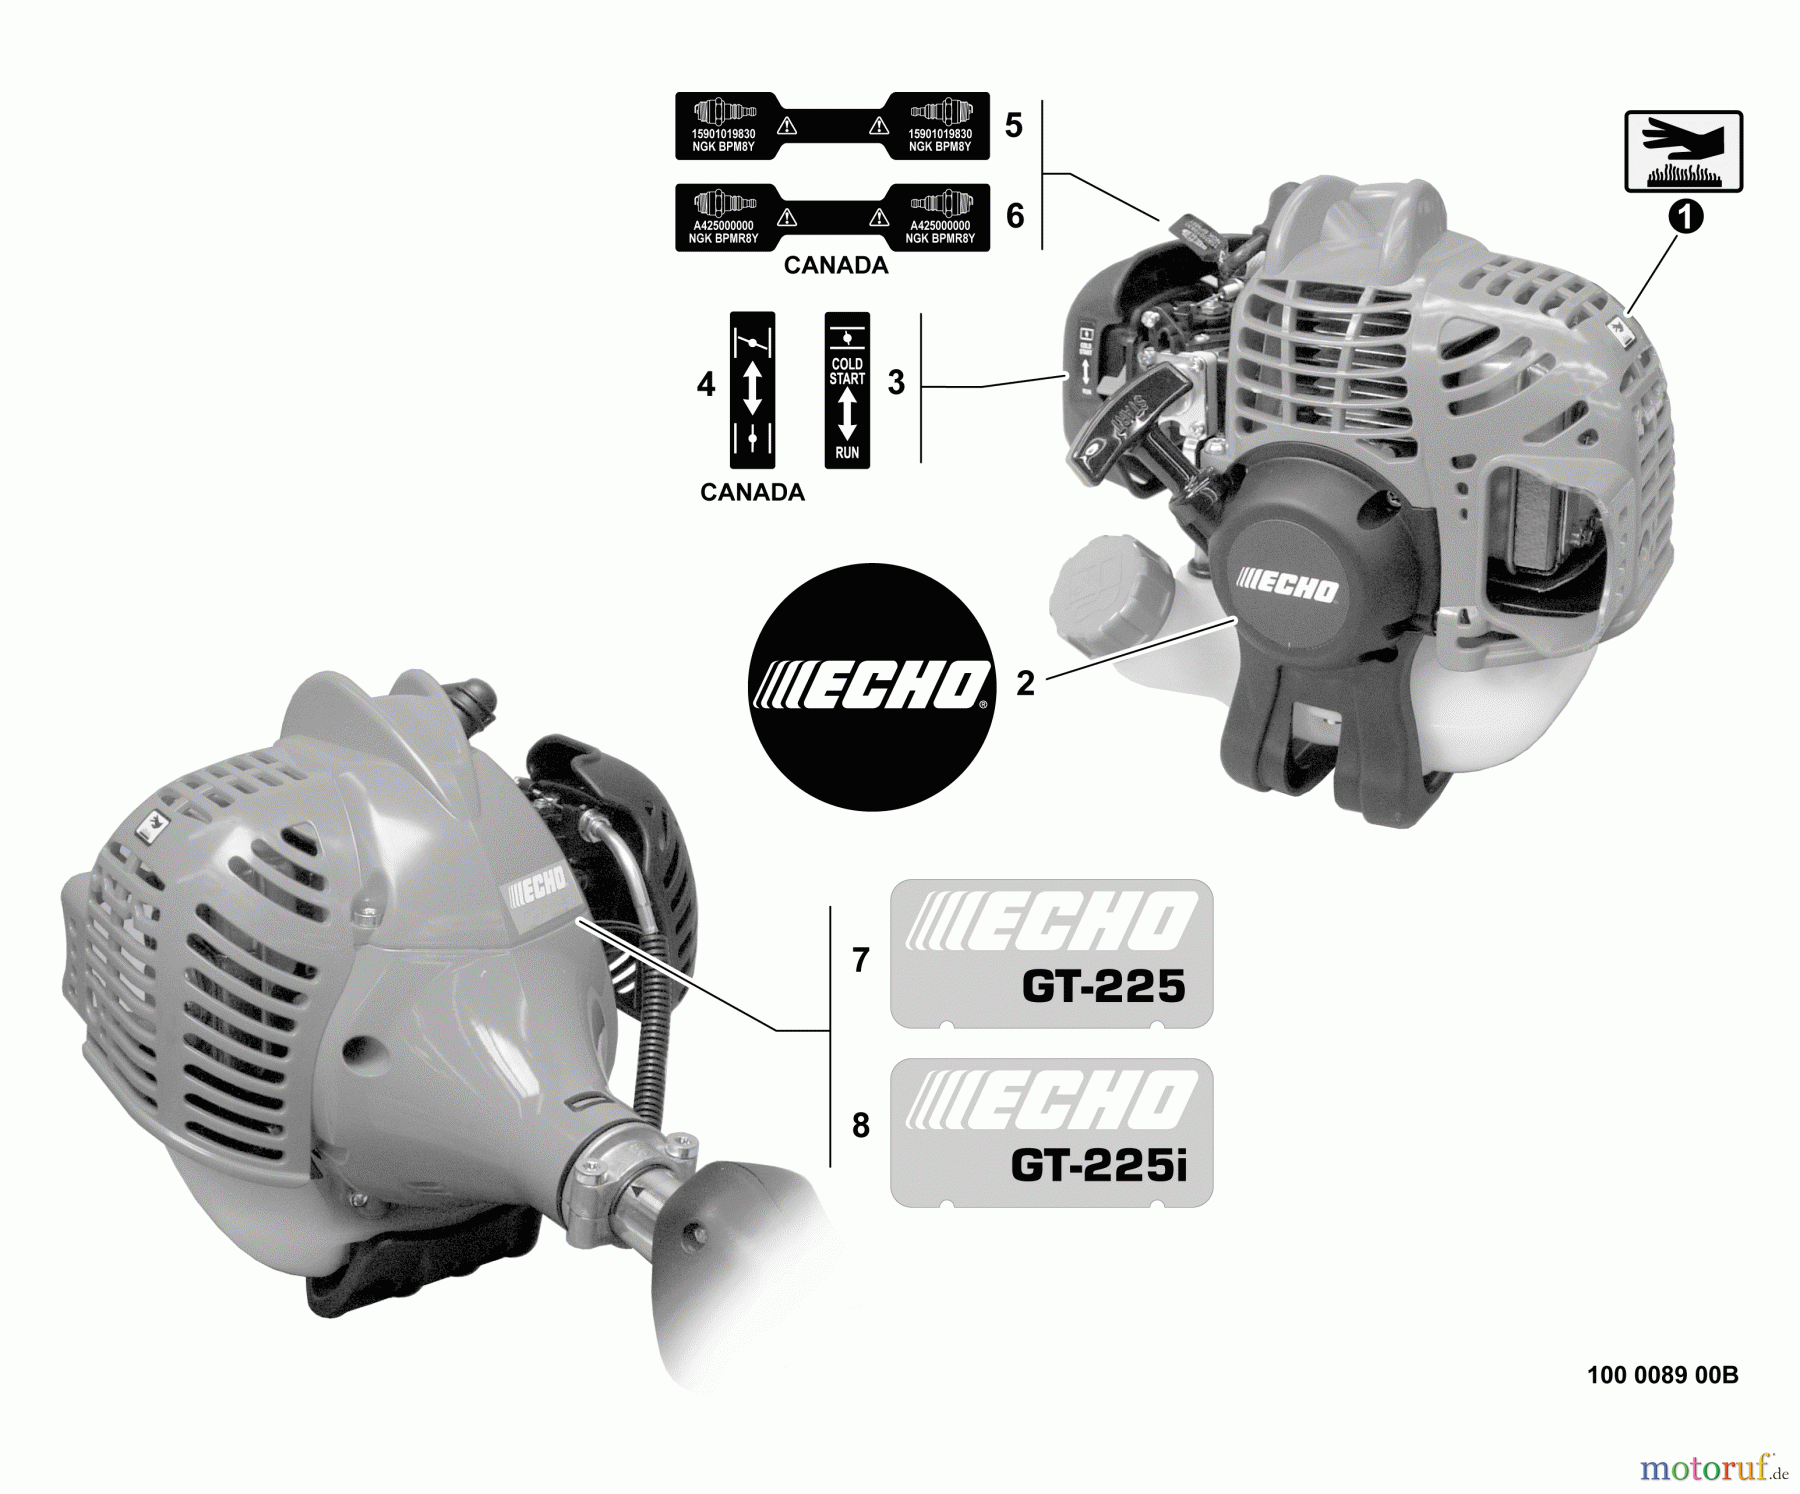  Echo Trimmer, Faden / Bürste GT-225 - Echo String Trimmer, S/N: S53912001001 - S53912999999 Labels